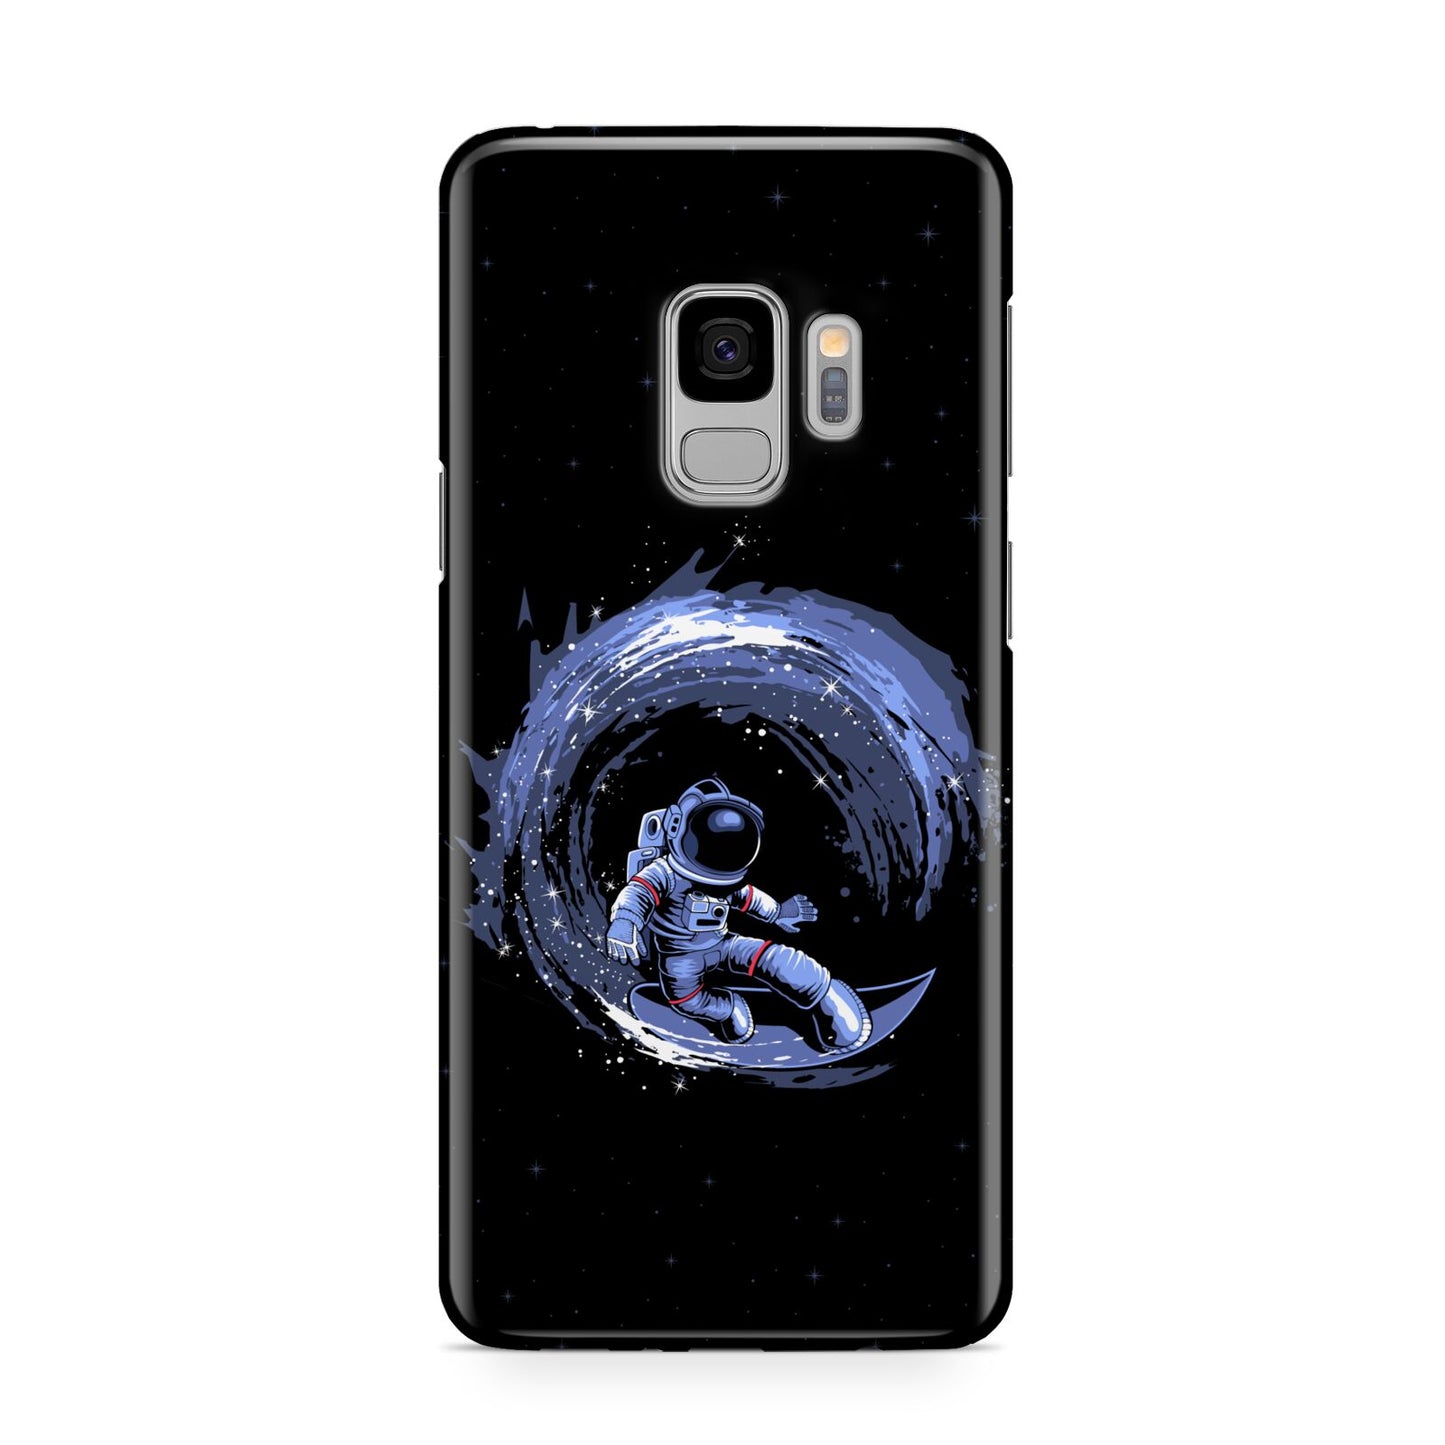 Surfing Astronaut Samsung Galaxy S9 Case